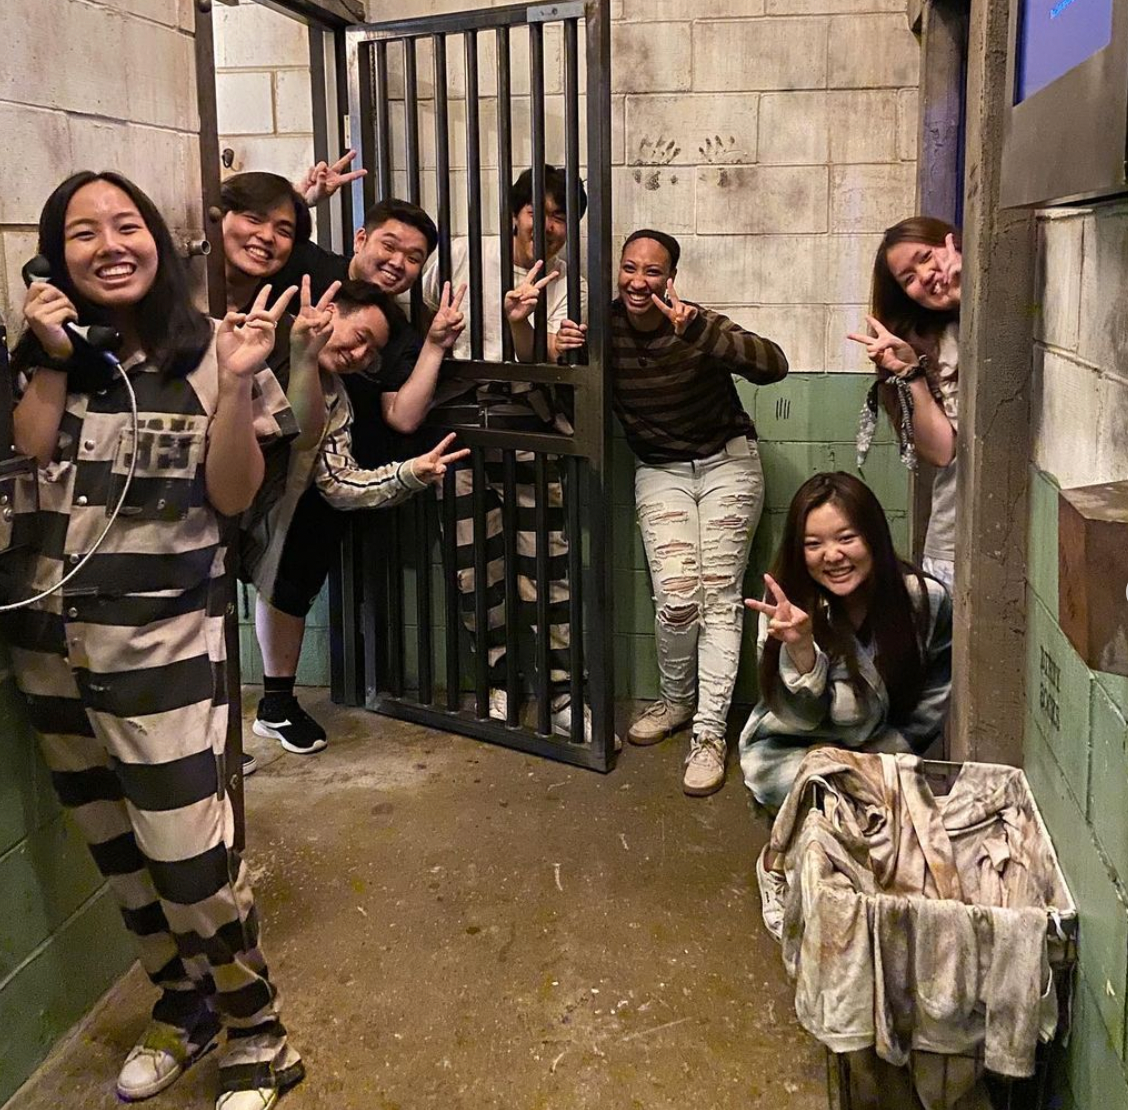 2023 Prison Break Escape Room